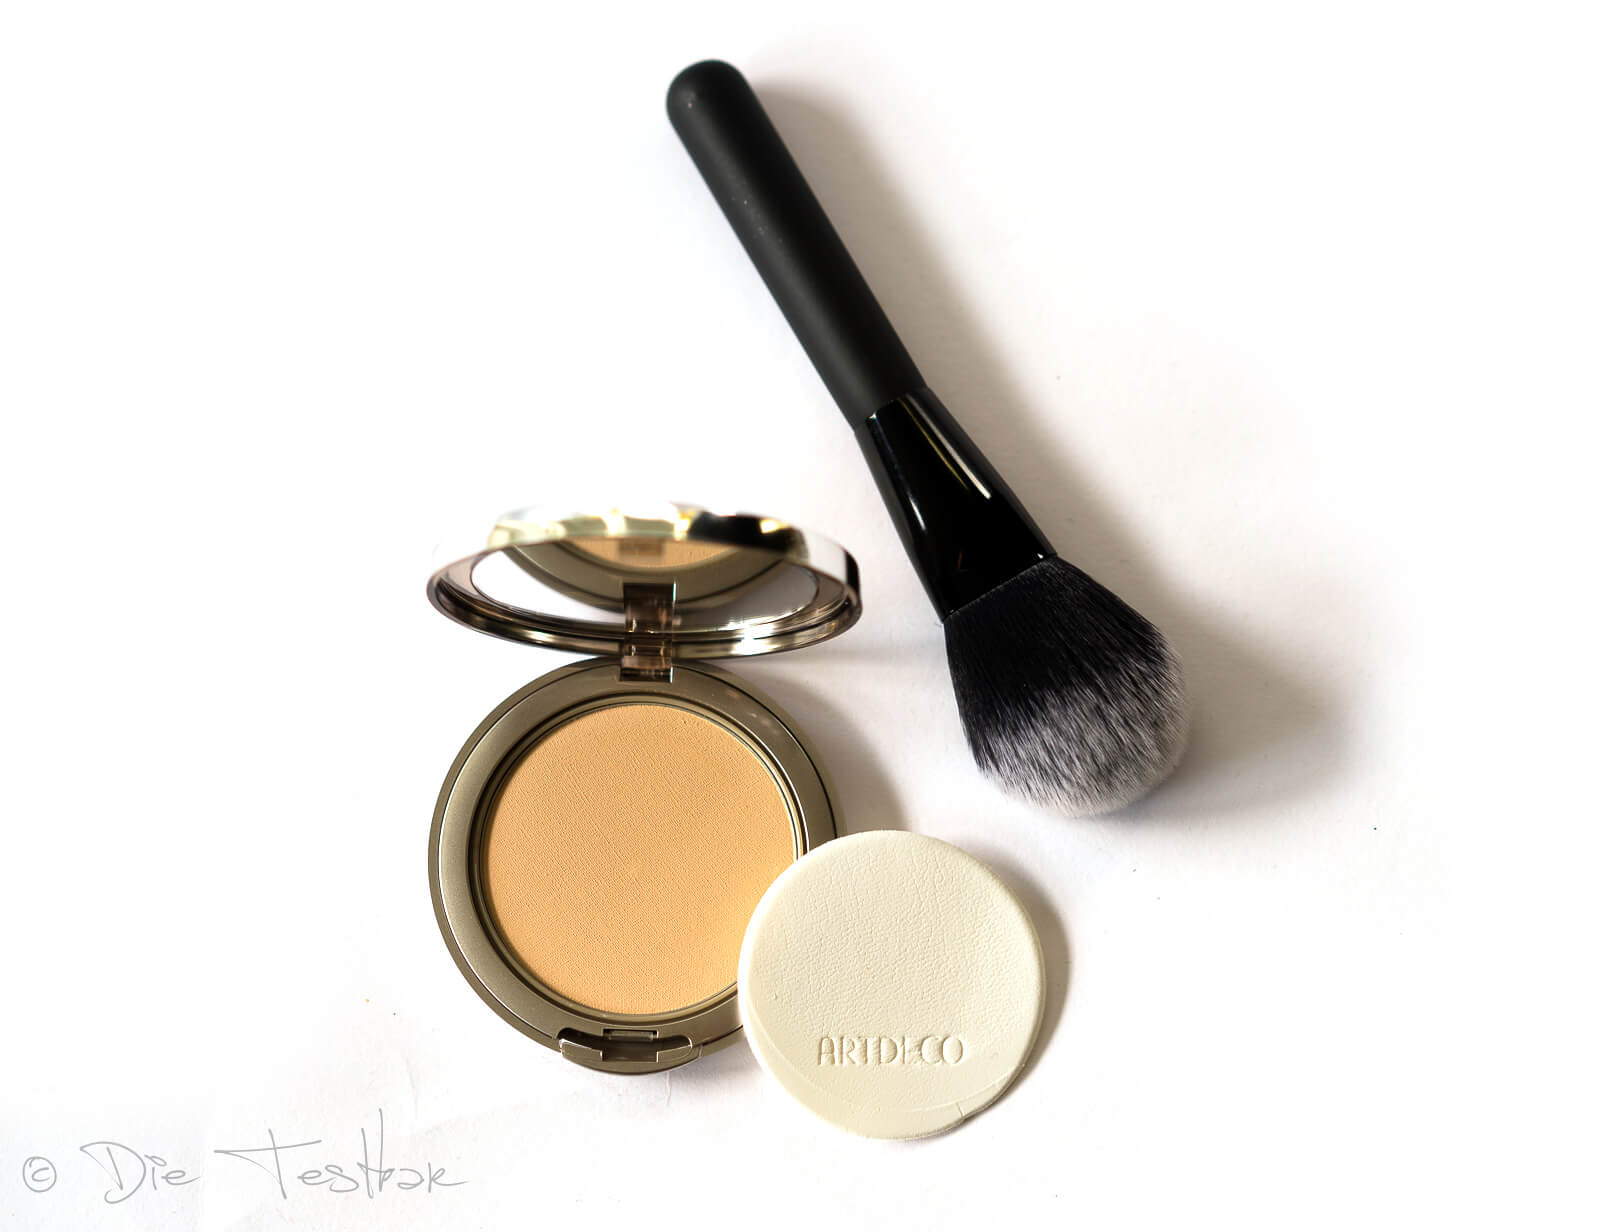 Kosmetik Lieblinge - Make-up und Nagellacke von Artdeco 5